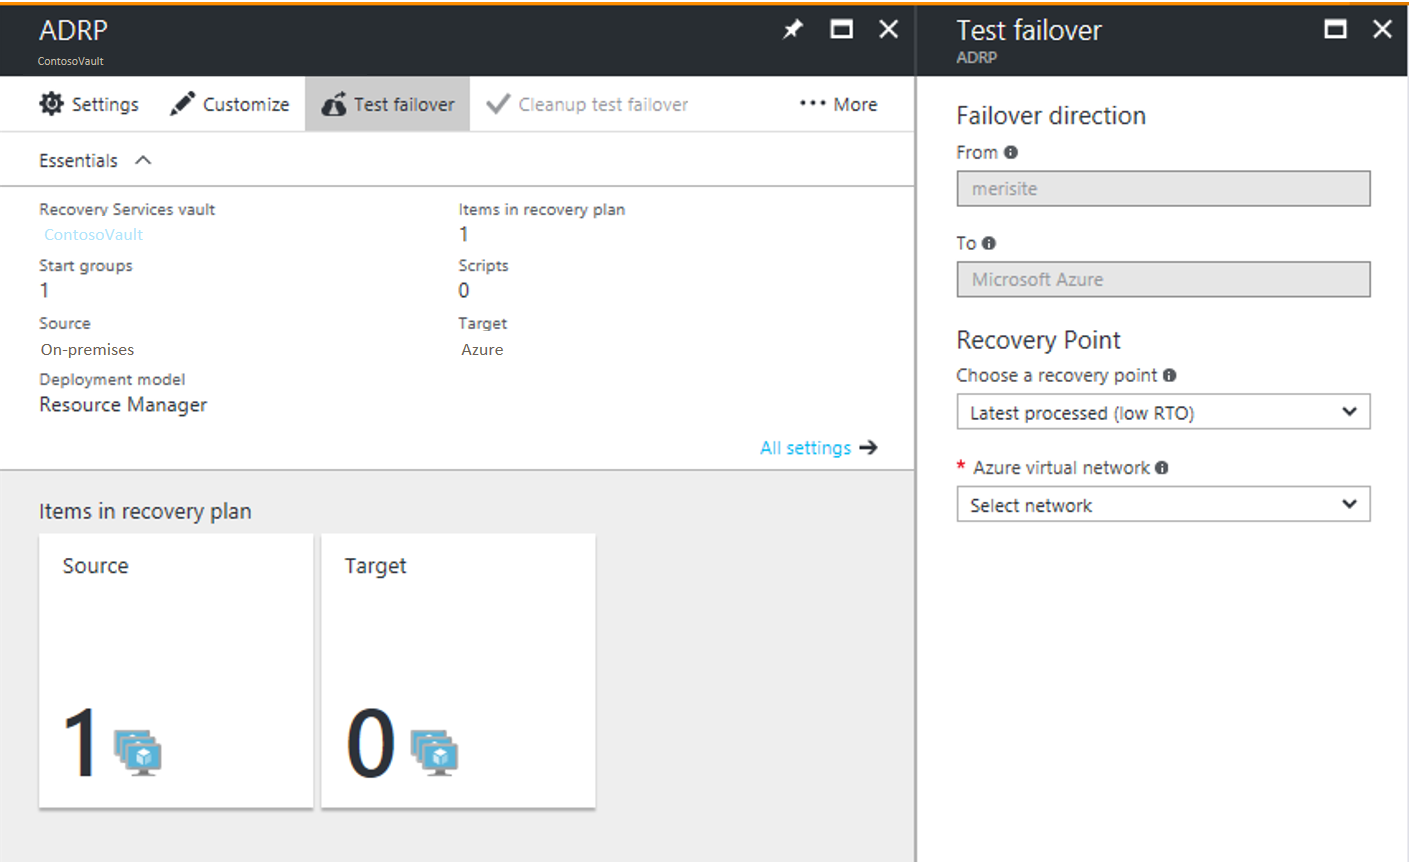 لقطة شاشة لصفحة اختبار تجاوز الفشل في مدخل Microsoft Azure.